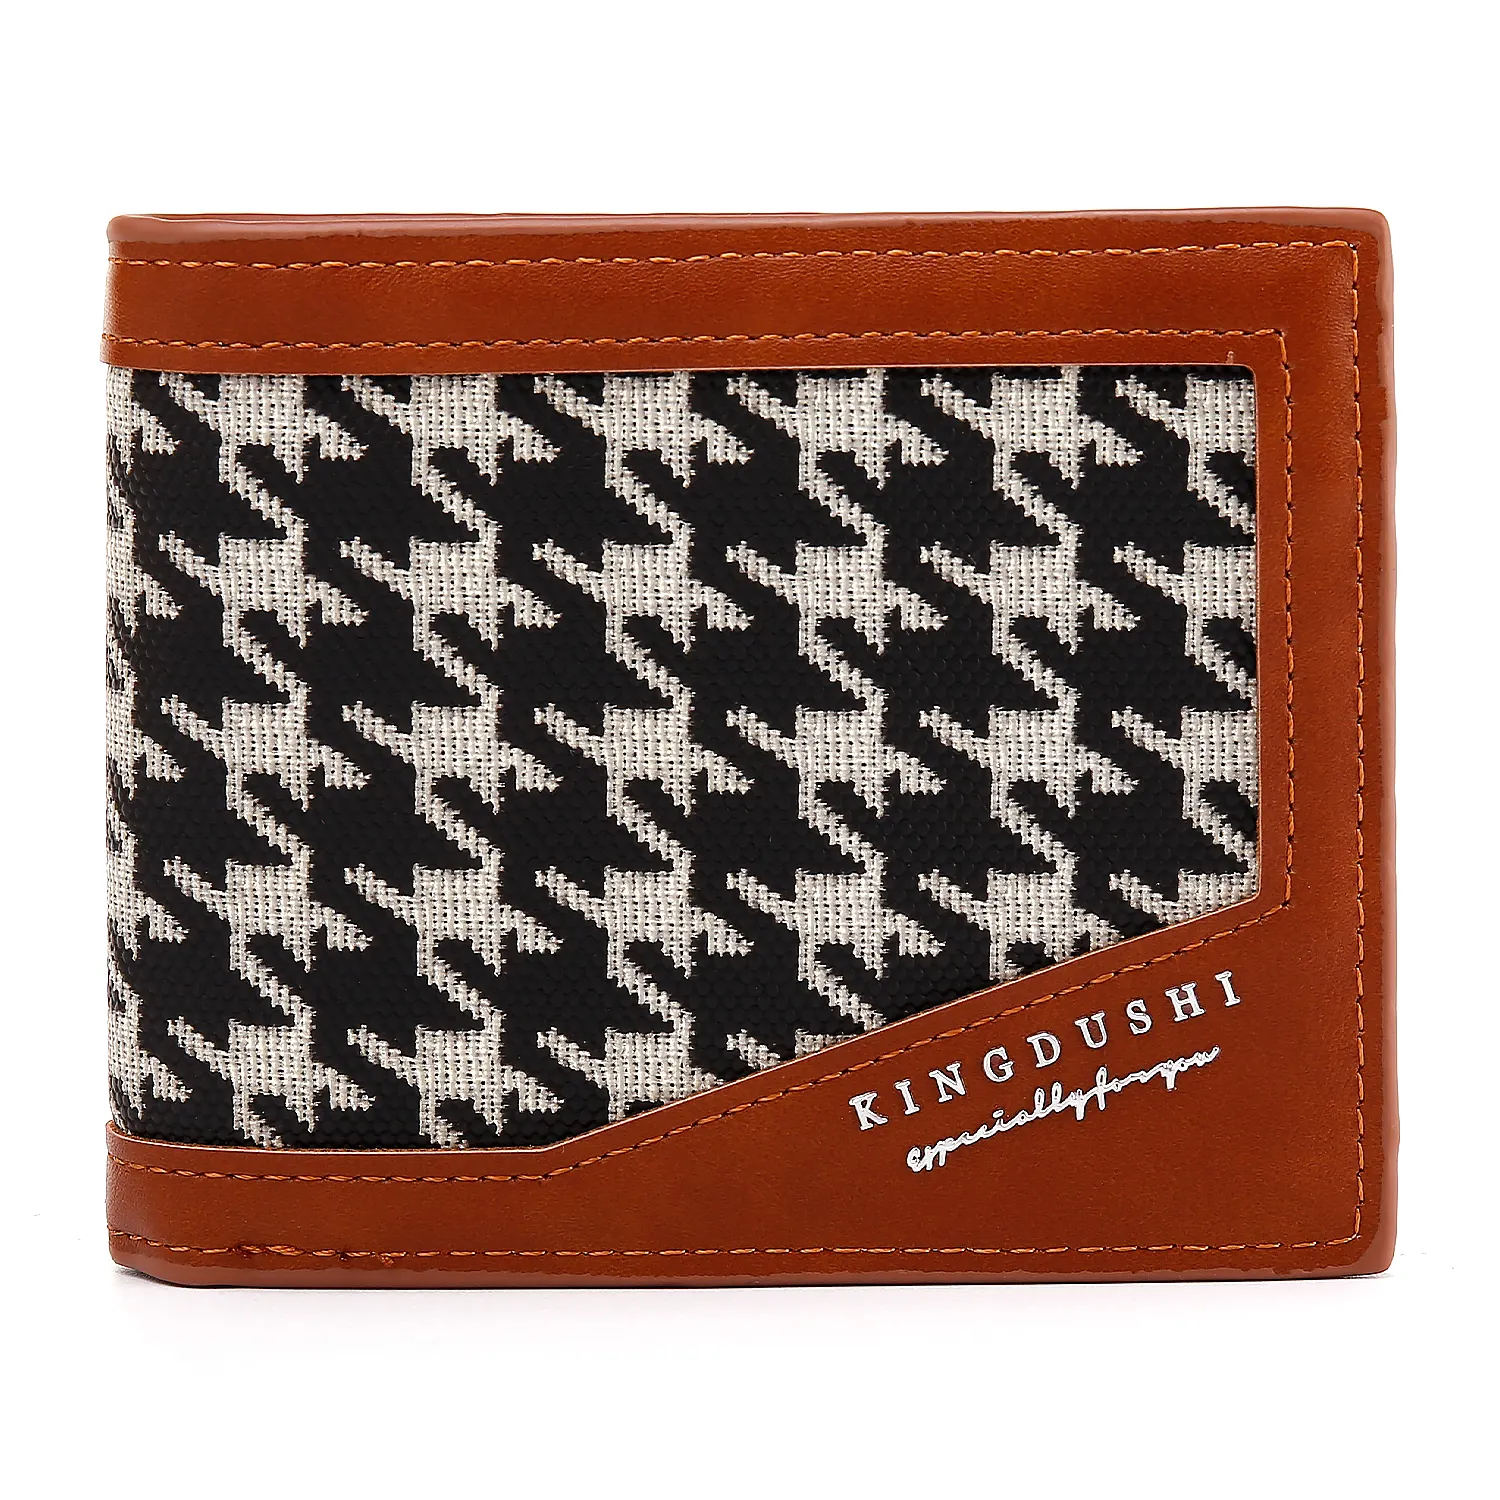 Nouveau design de portefeuille en cuir PU pour hommes porte-cartes multi-cartes court RFID fenêtre d'identification visible à la mode motif floral serrure PVC ouverte